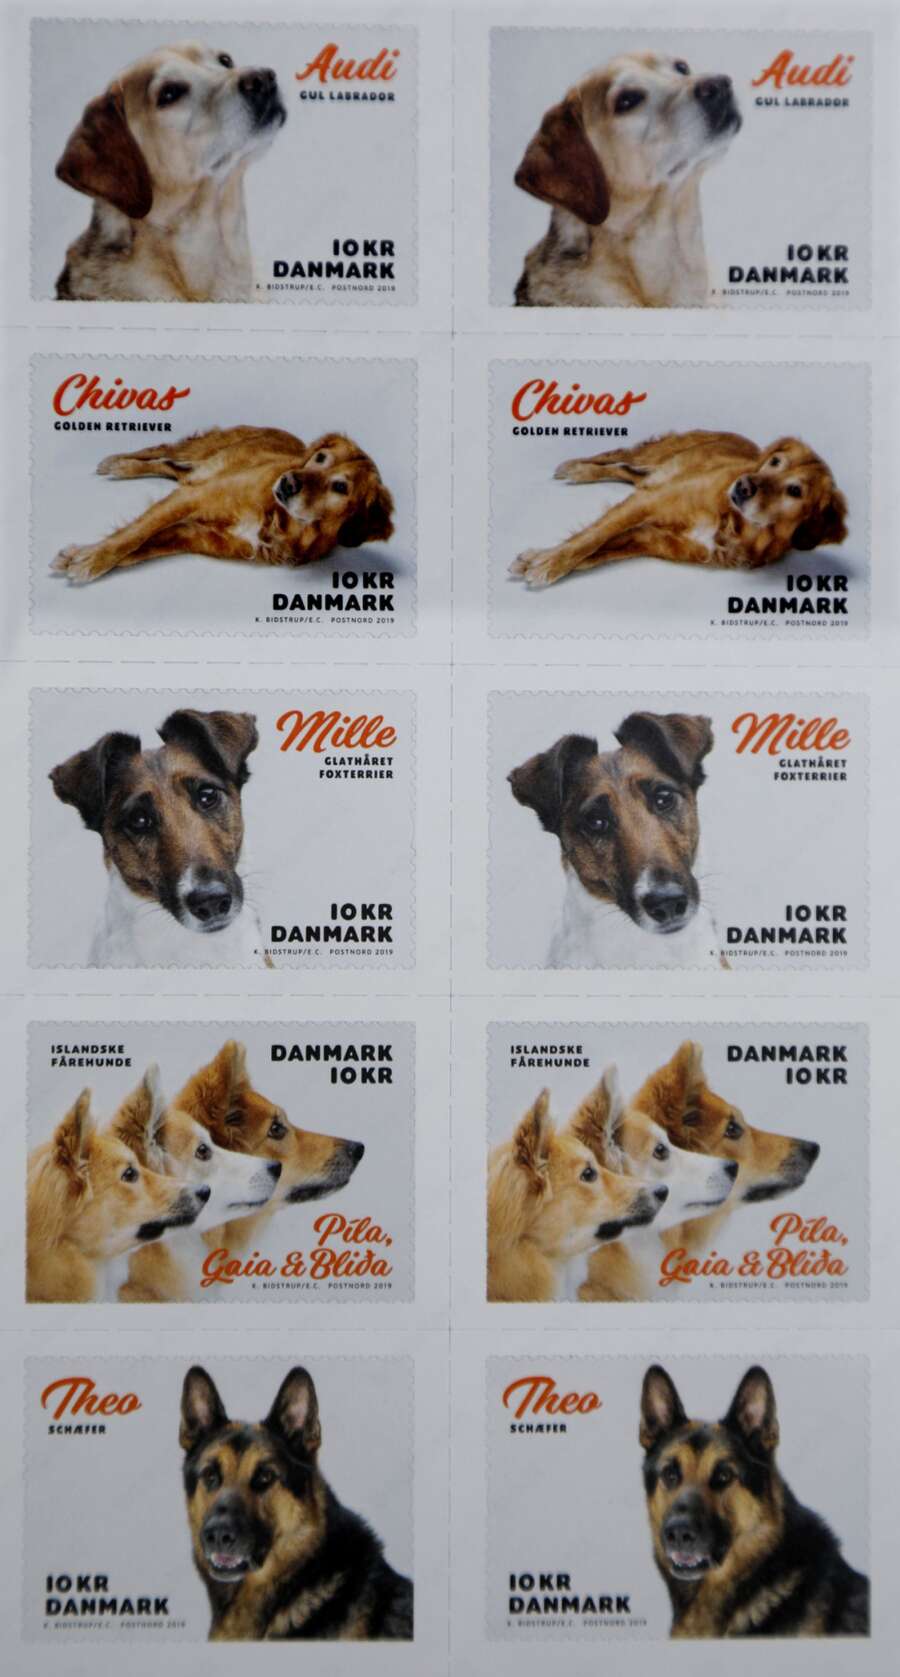 Nybegynder Praktisk kærtegn Schæferhund fra Kibæk bliver foreviget: Kommer på millionvis af frimærker |  Herning Folkeblad